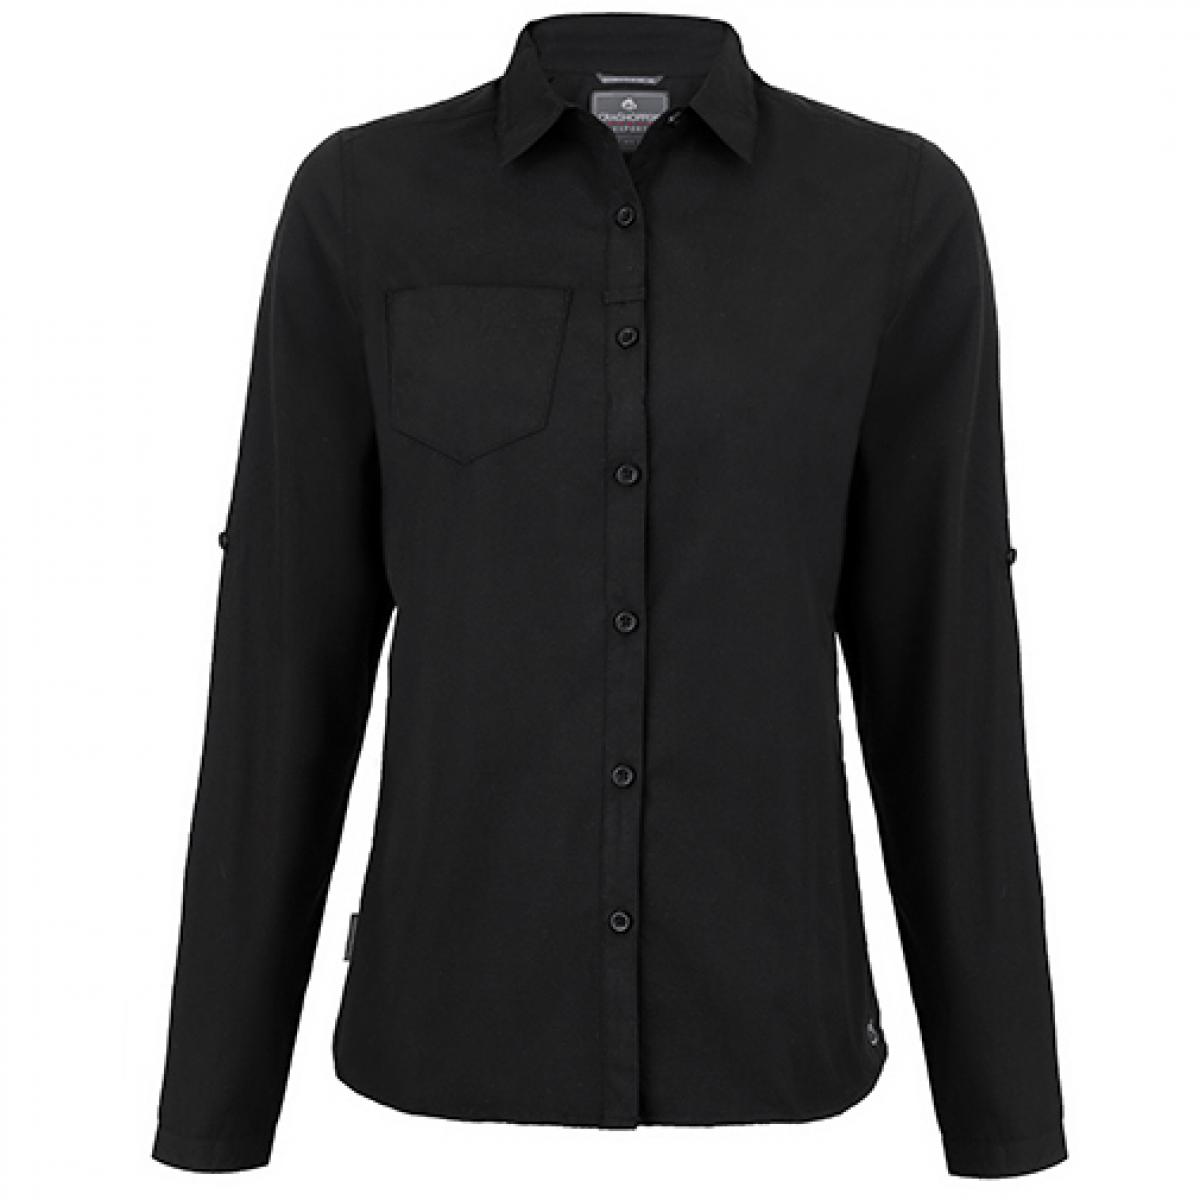 Hersteller: Craghoppers Expert Herstellernummer: CES002 Artikelbezeichnung: Expert Womens Kiwi Long Sleeved Shirt Farbe: Black